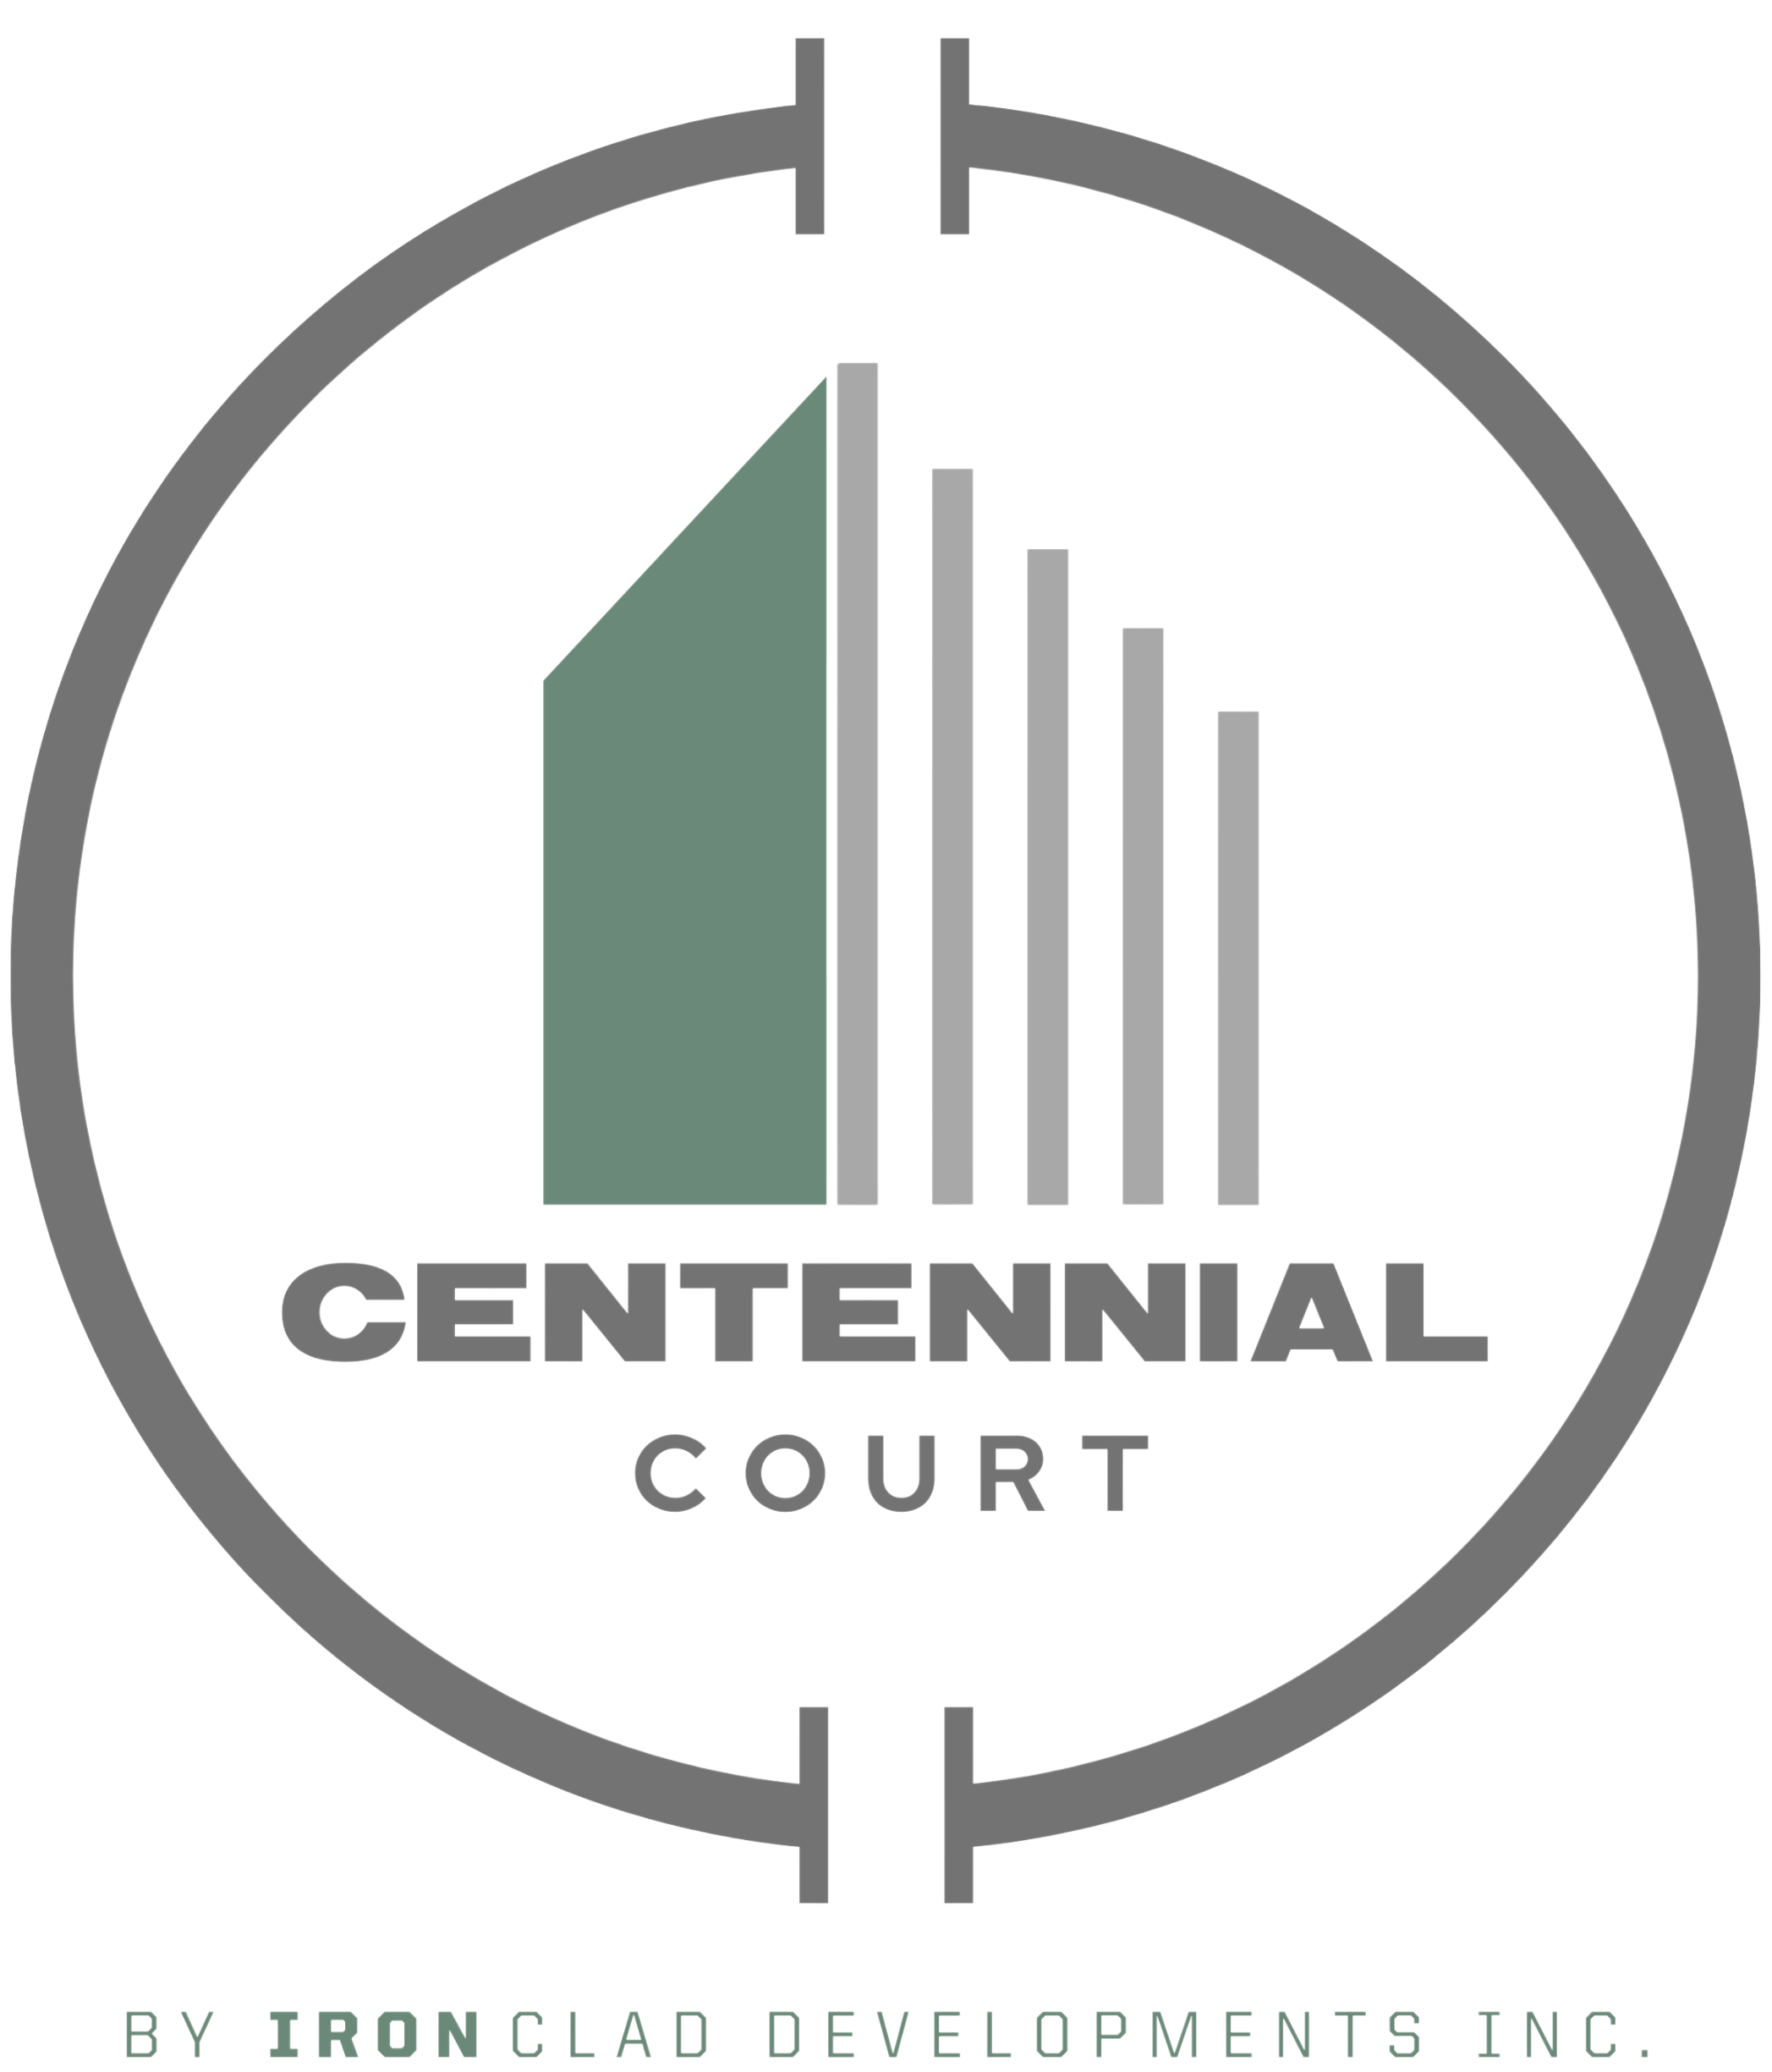 Centennial Court